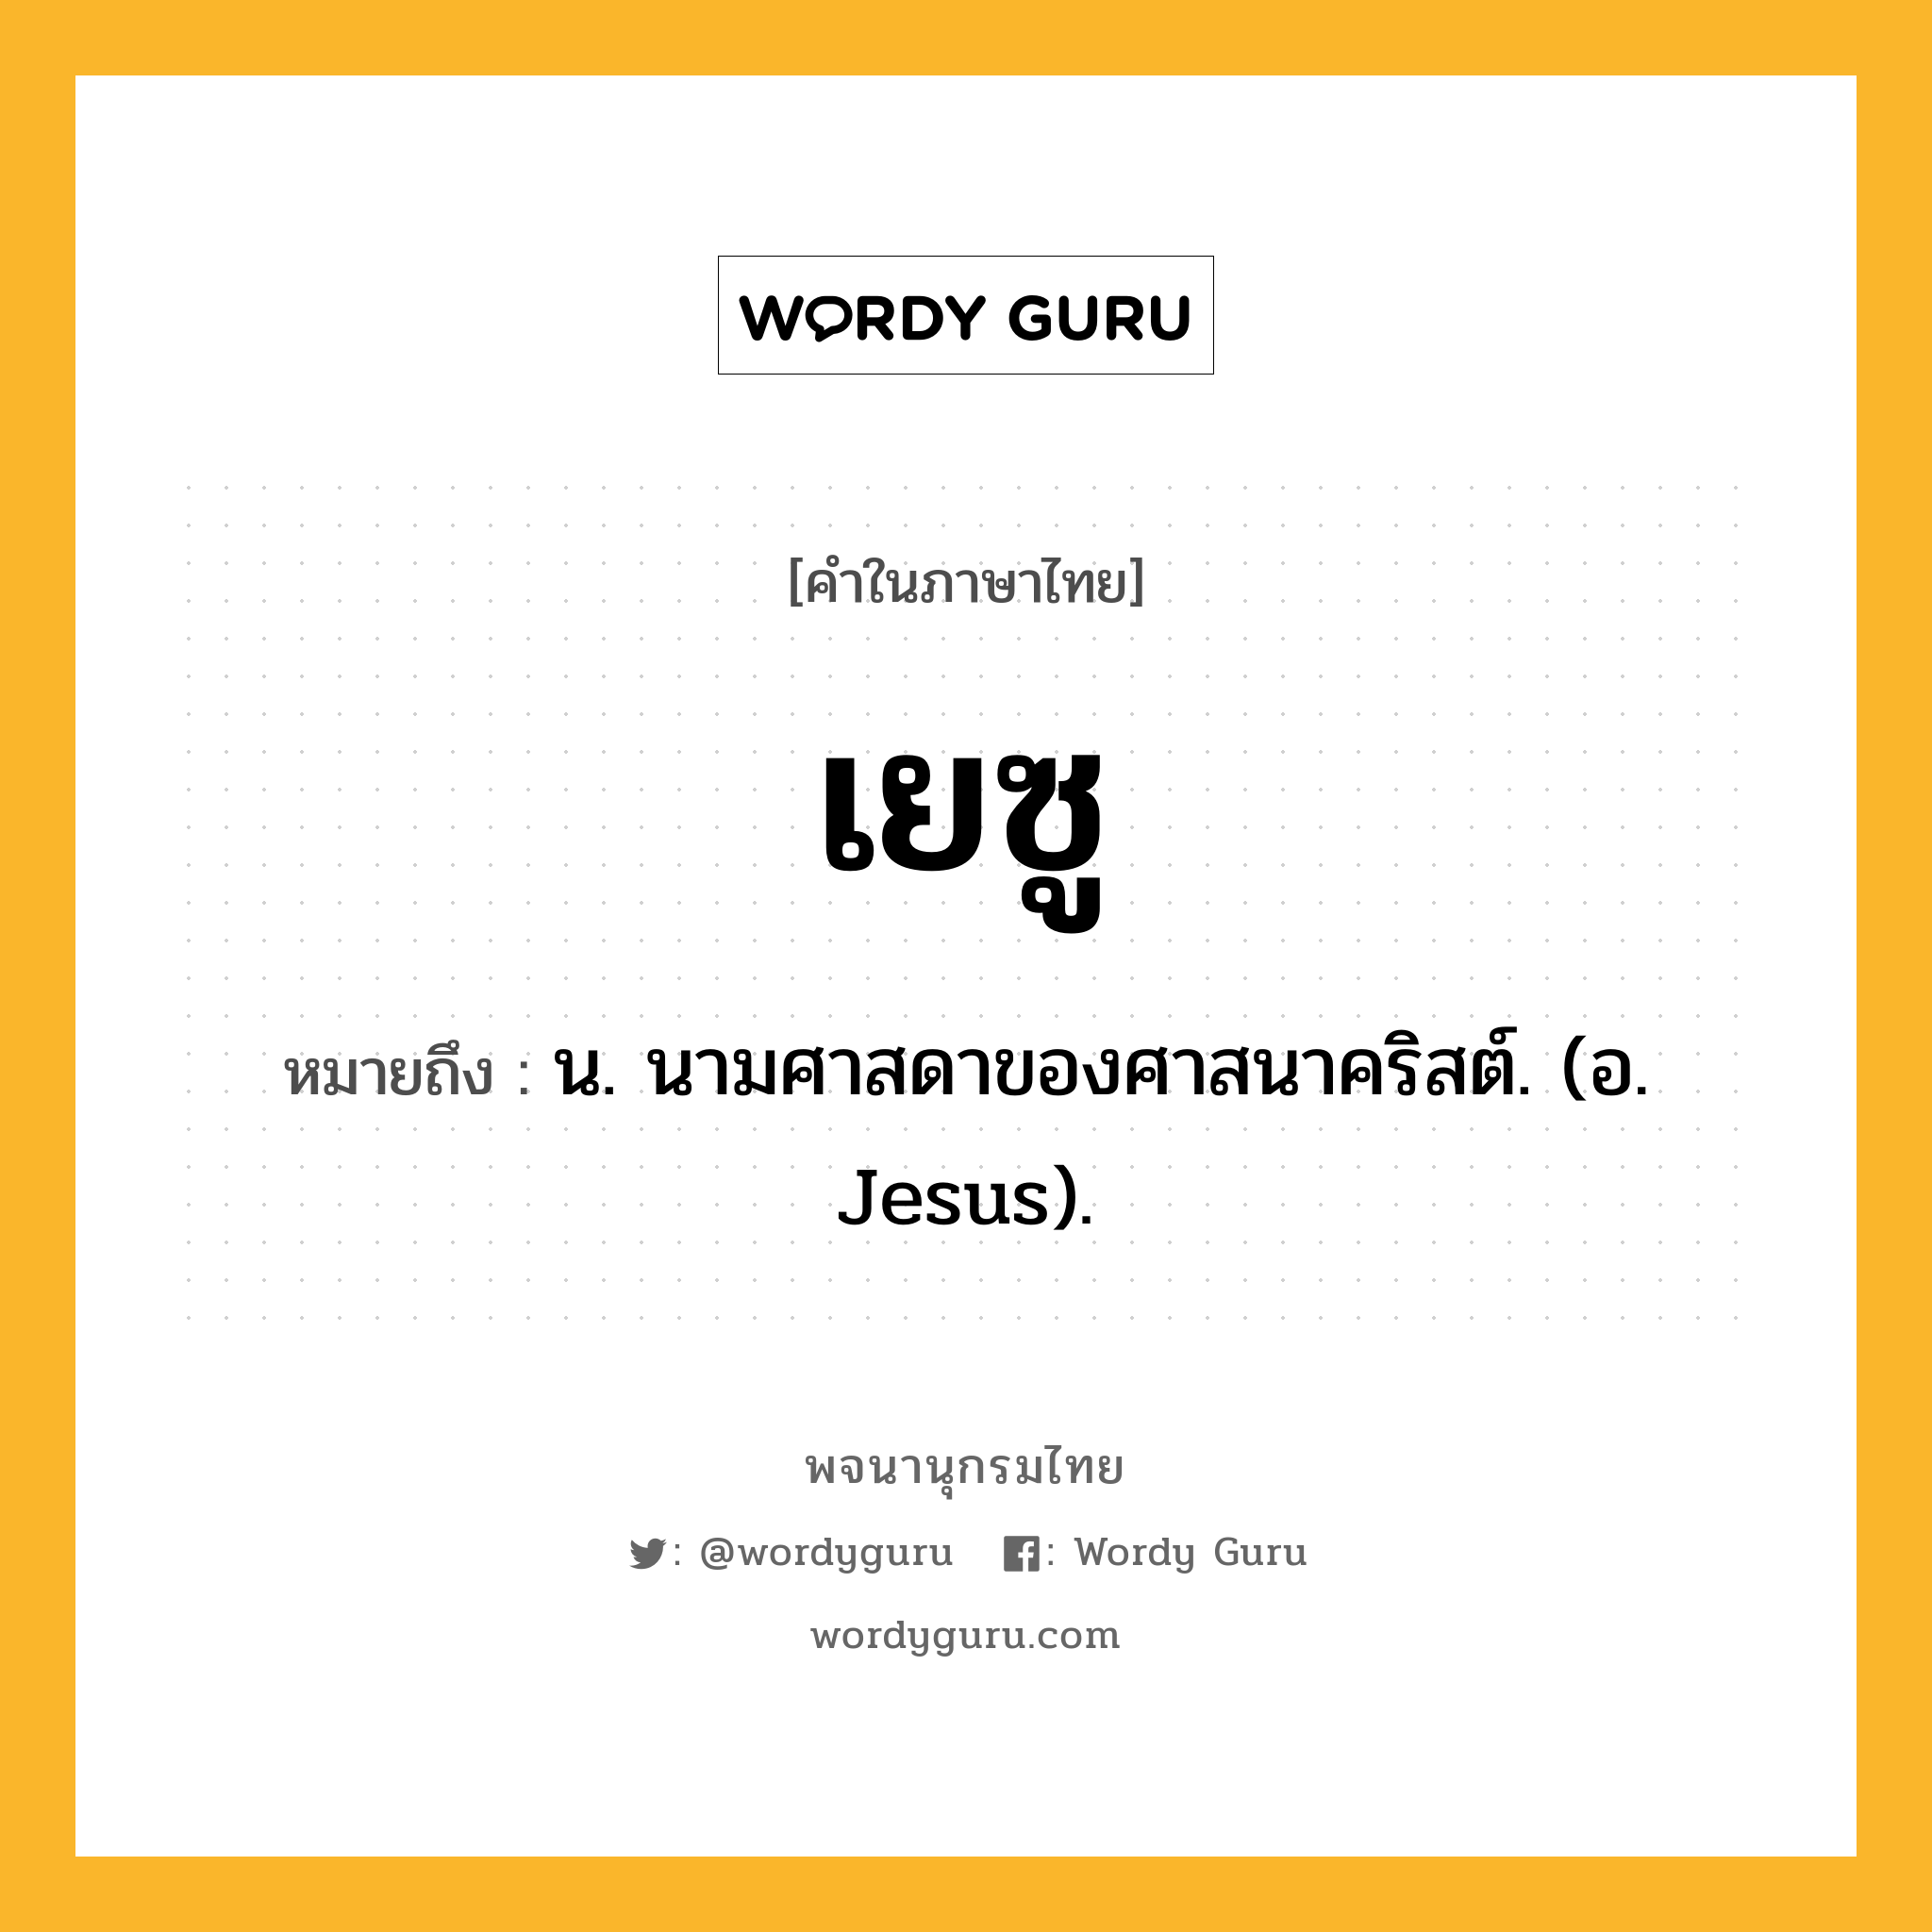 เยซู หมายถึงอะไร?, คำในภาษาไทย เยซู หมายถึง น. นามศาสดาของศาสนาคริสต์. (อ. Jesus).